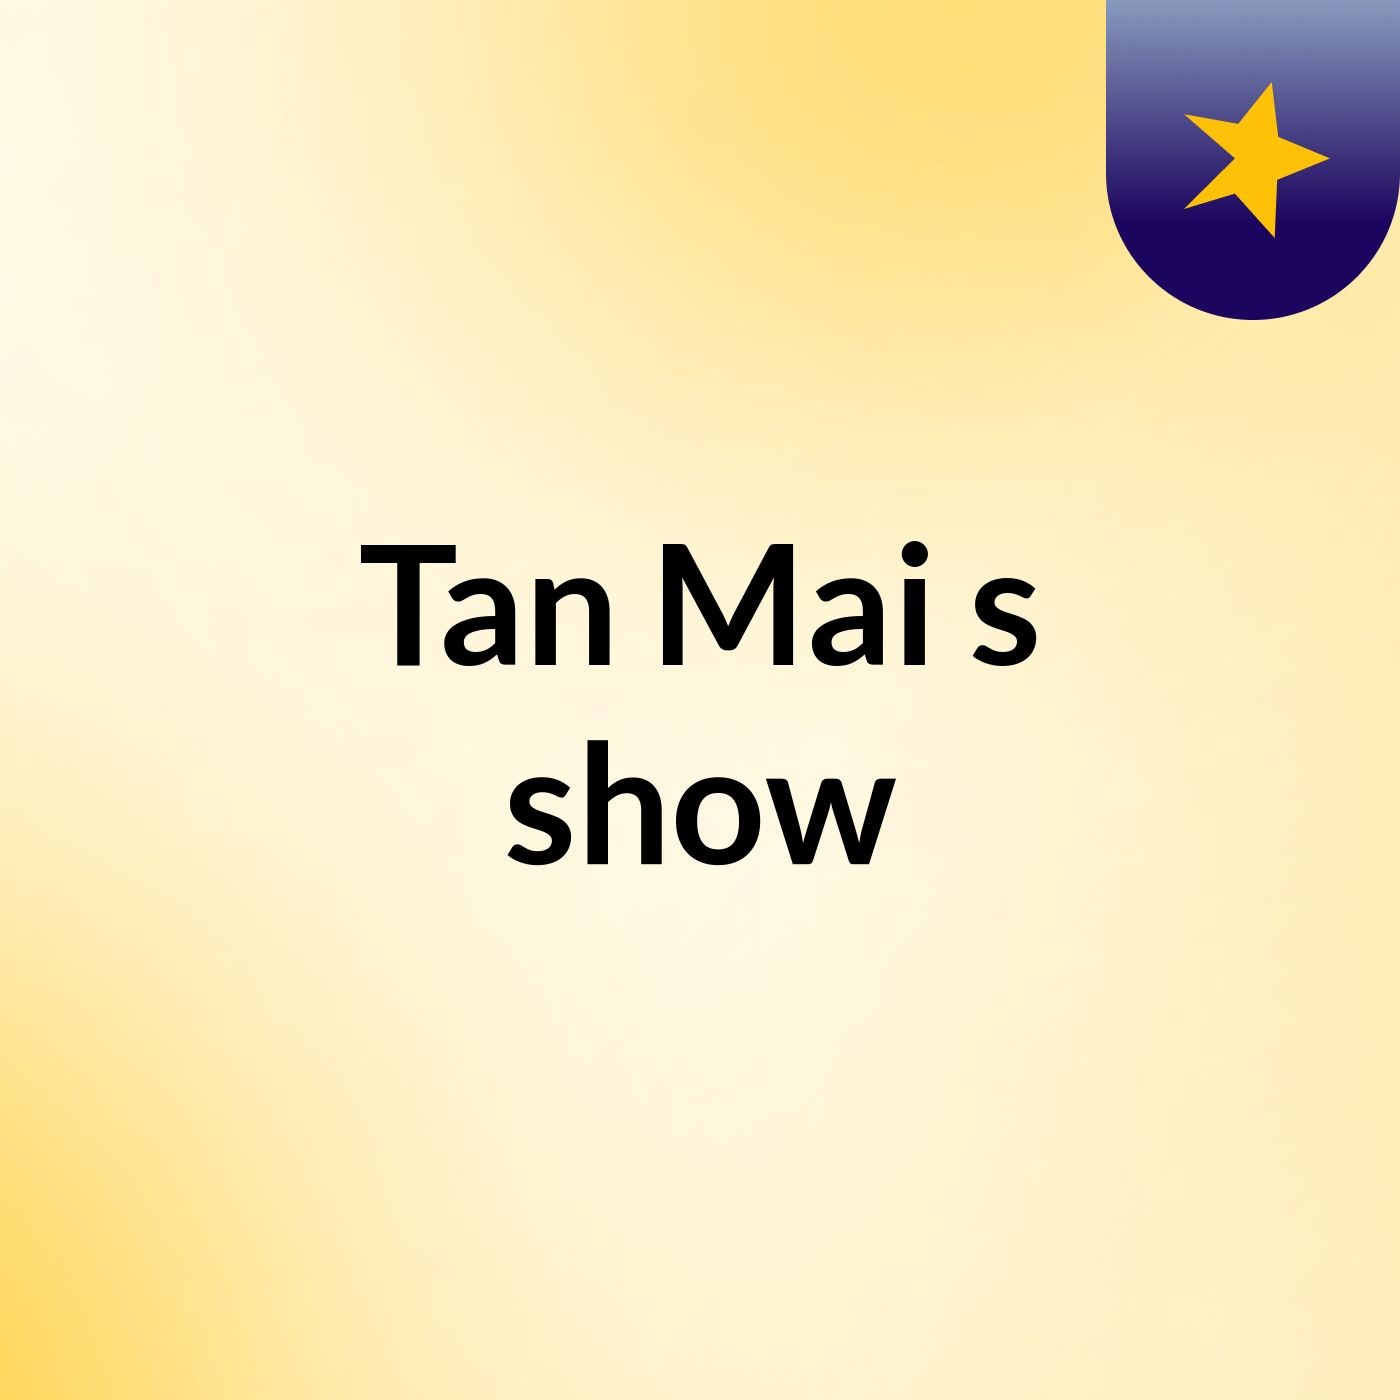 Tan Mai's show